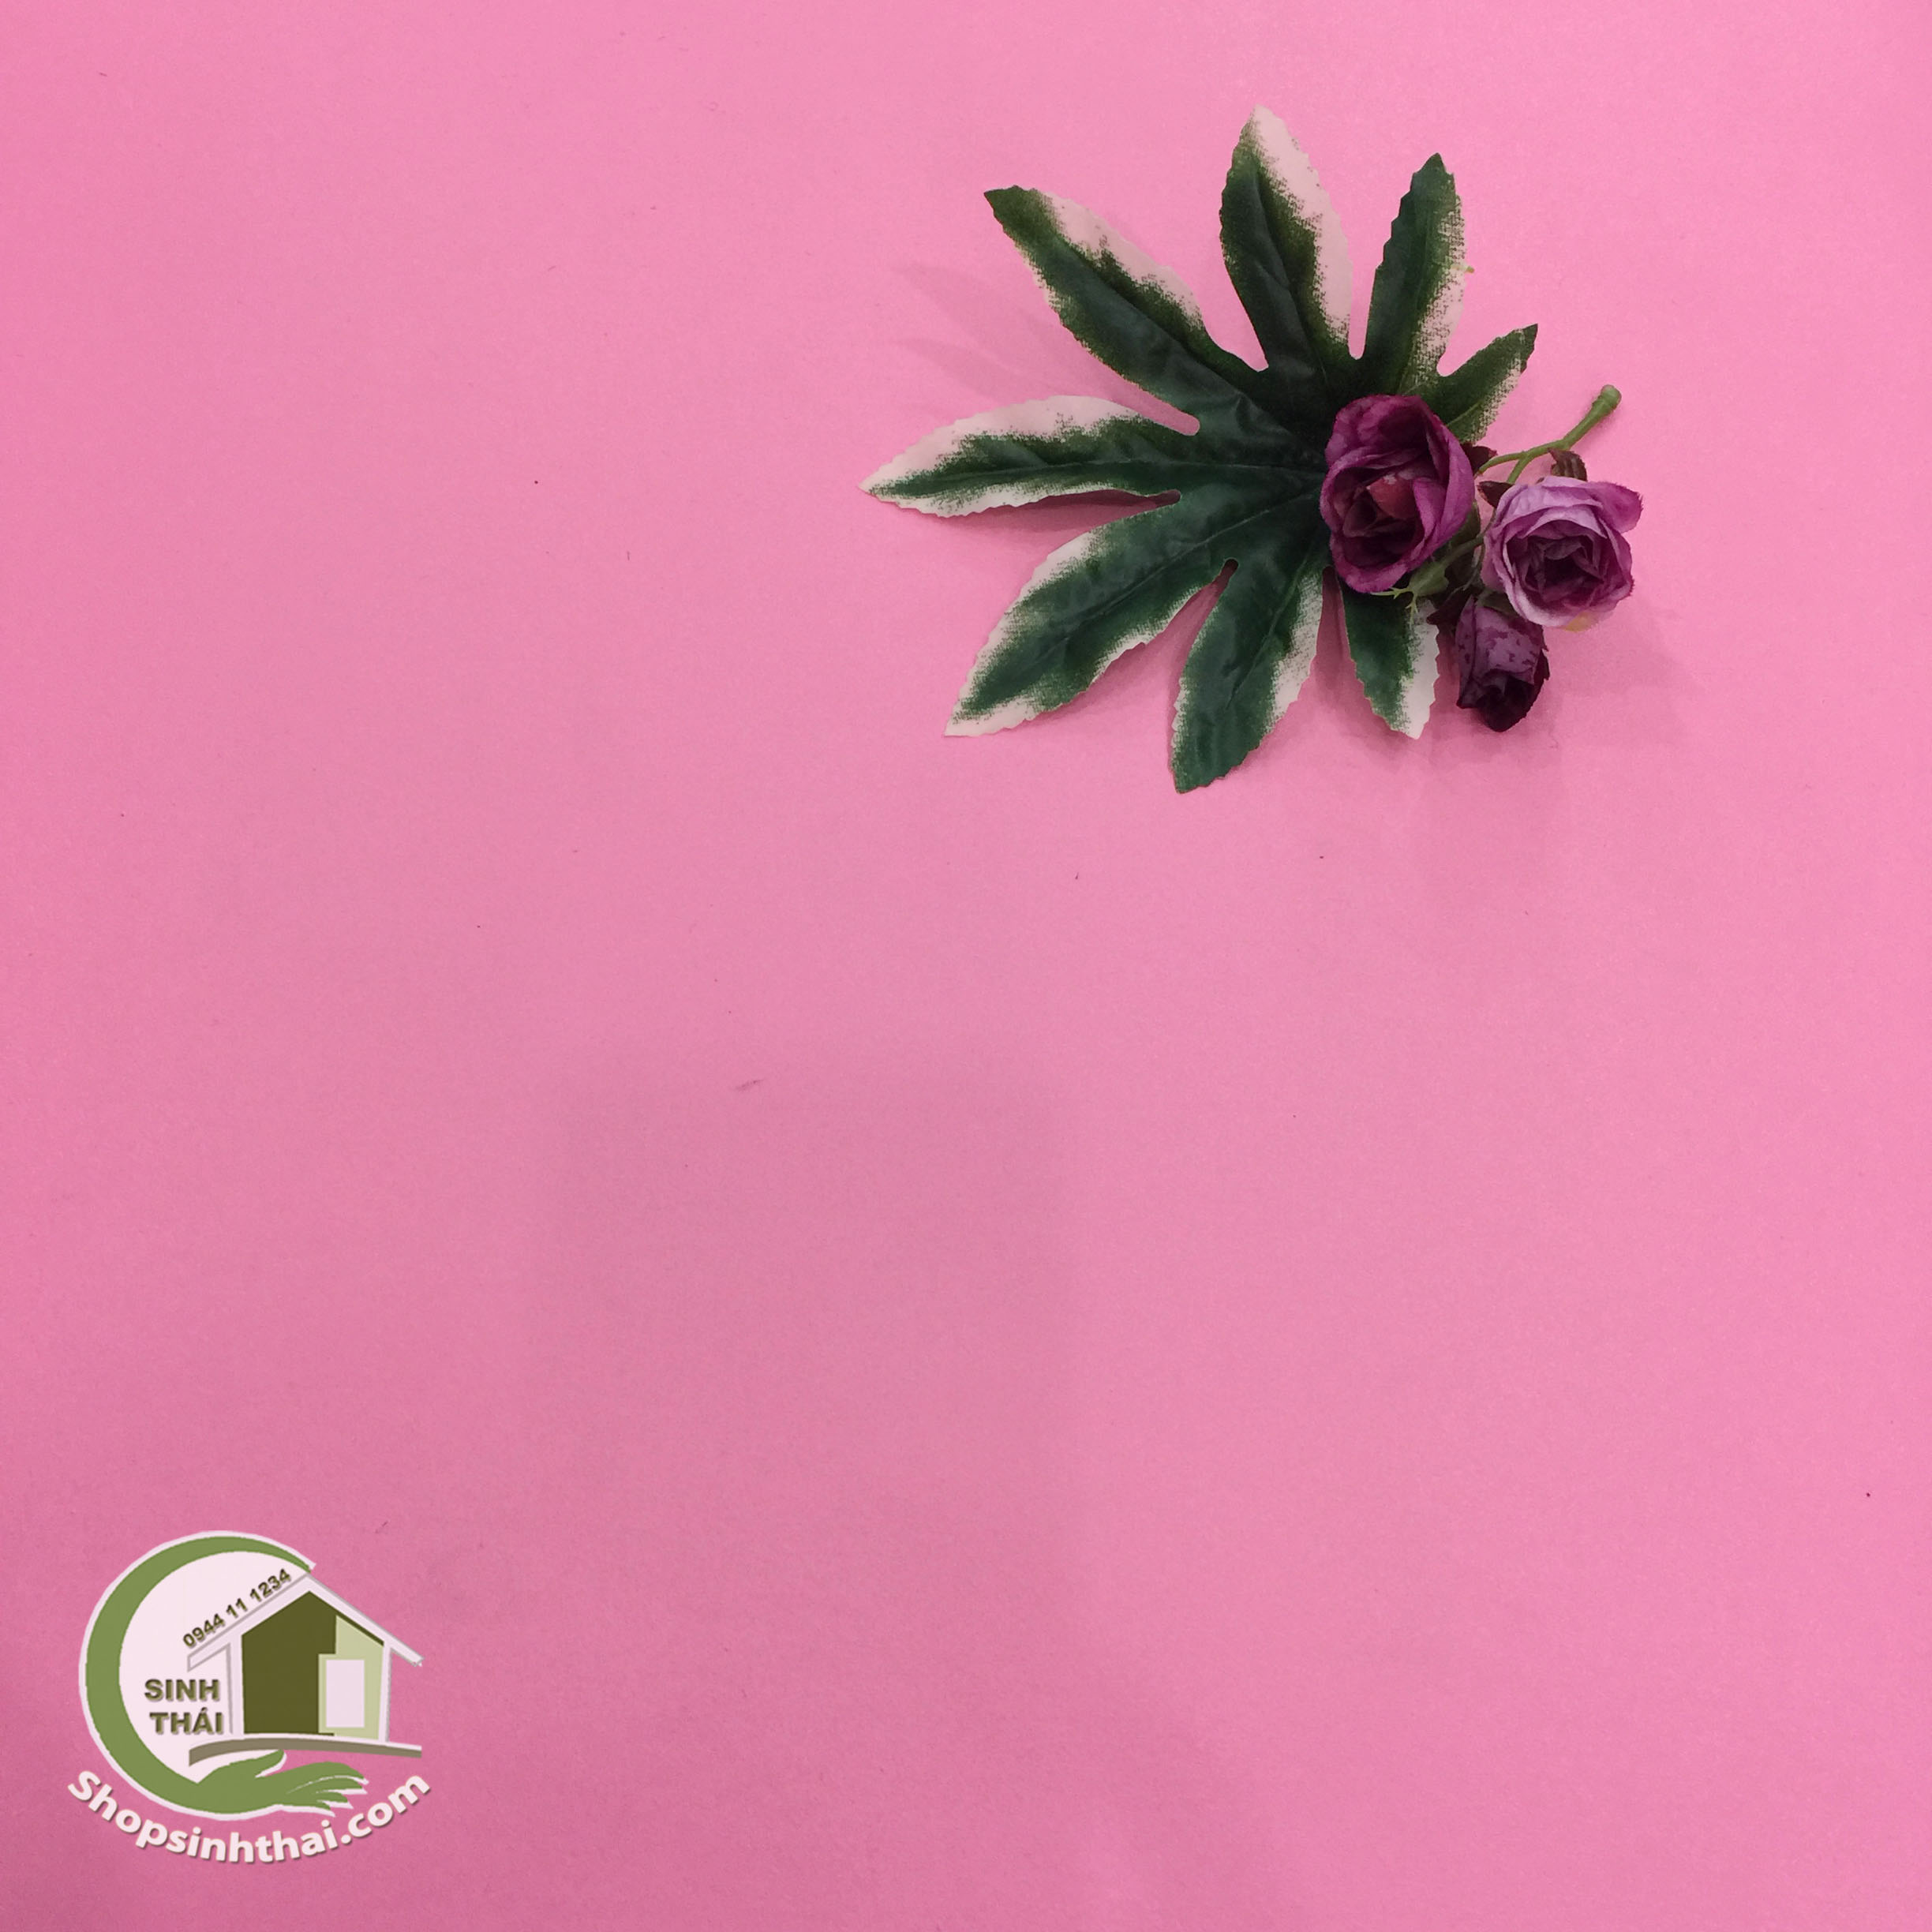 Phông nền giấy dán tường màu hồng nhám: 
Hãy trang trí ngôi nhà của bạn với phông nền giấy dán tường màu hồng nhám. Sản phẩm mang đến sự tươi trẻ, nữ tính và thịnh vượng cho không gian sống của bạn. Với kiểu dáng độc đáo và chất liệu cao cấp, phông nền giấy dán tường màu hồng nhám giúp tạo nên một không gian tràn đầy tiềm năng và đẹp mắt.